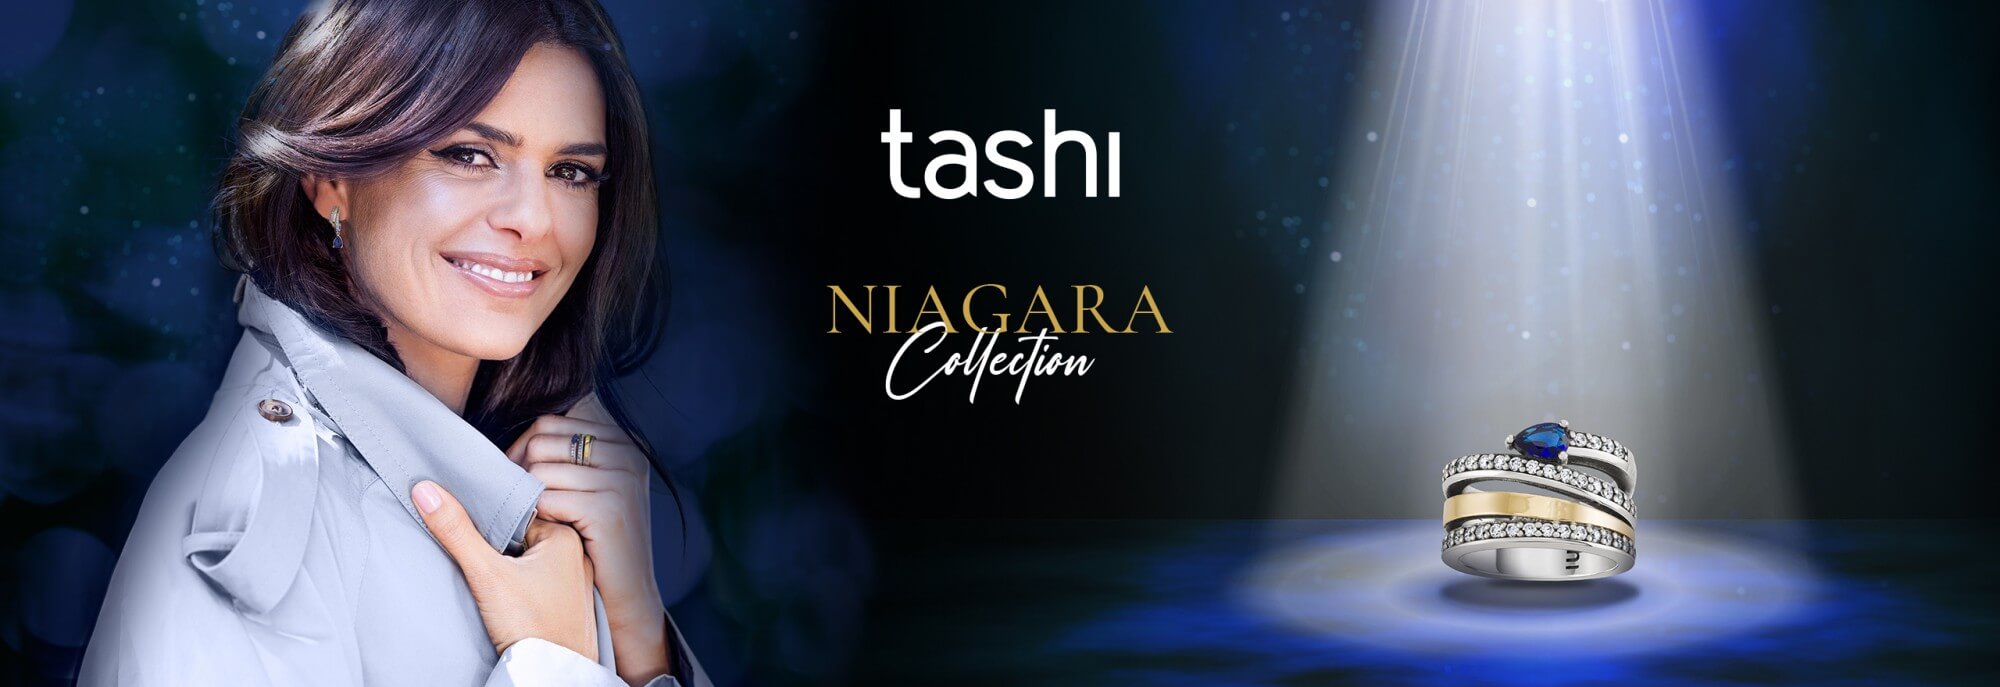 Joias TASHI - Coleção Niagara